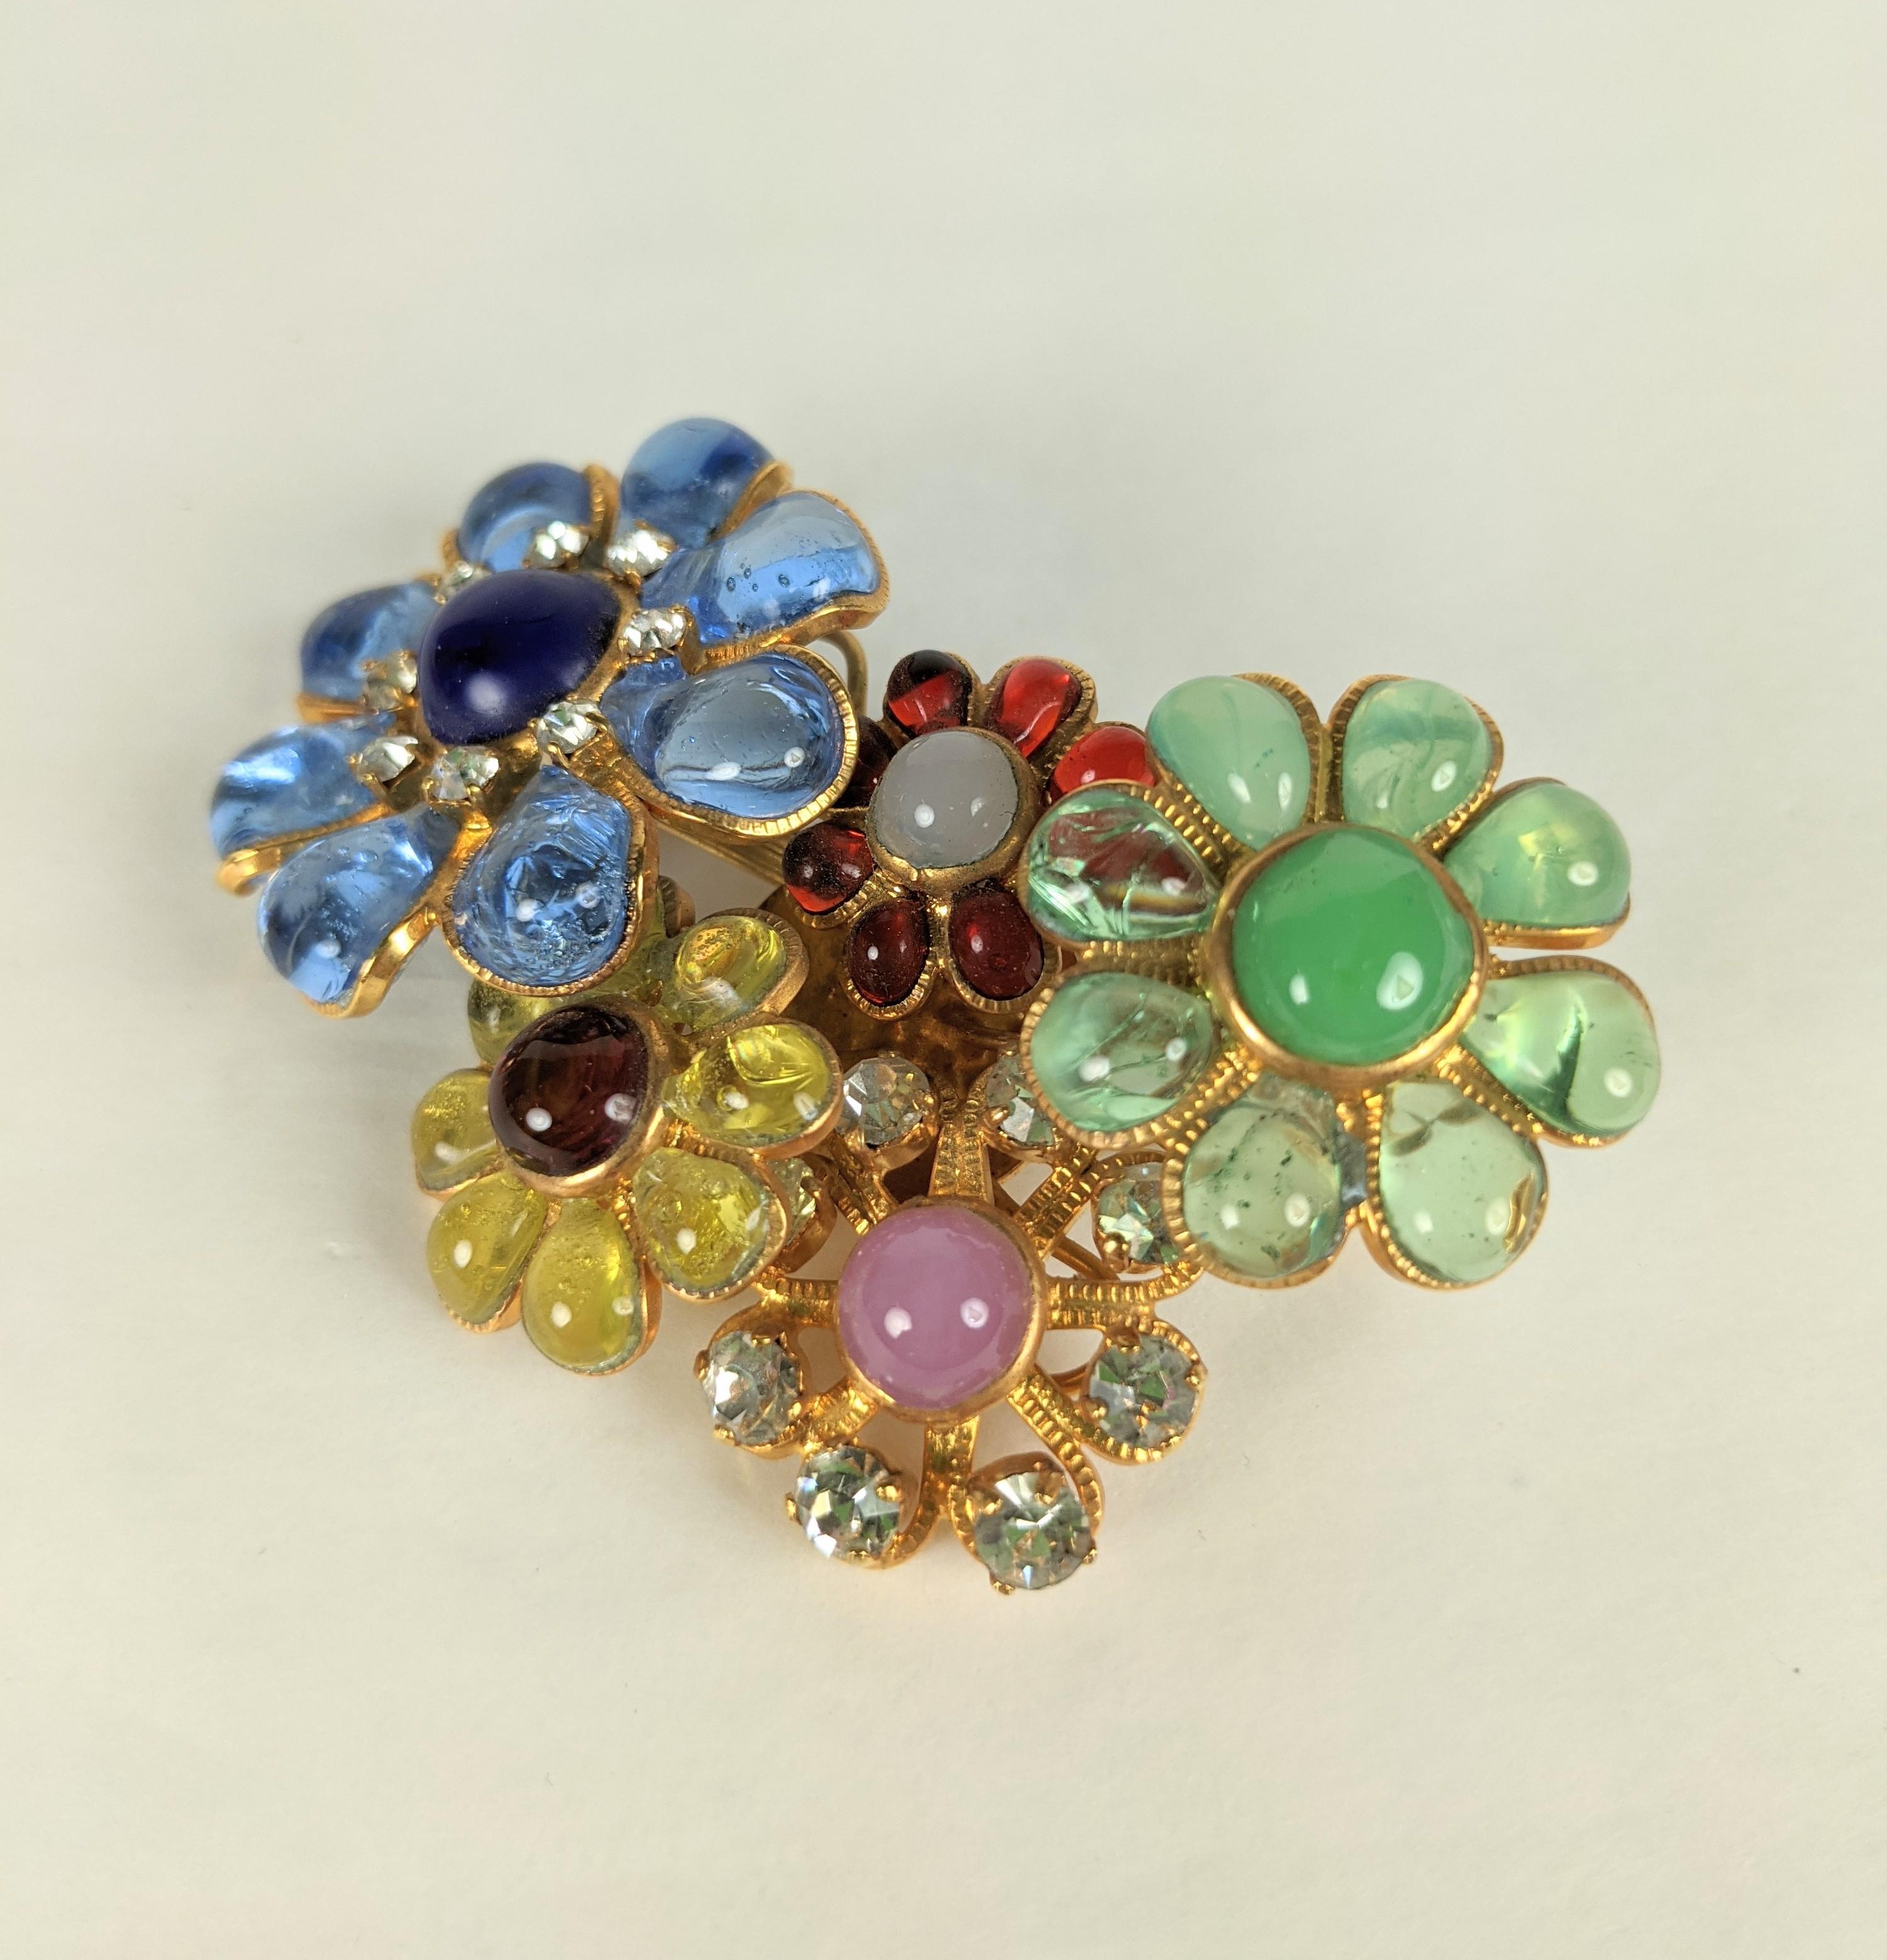 Hübsche Chanel Maison Gripoix Brosche mit mehreren Blumen und mehreren Schichten. Handgegossene Glasemaille in Juwelentönen, eingefasst in vergoldetes Bronzemetall mit Kristallstrass-Akzenten.
Ausgezeichneter Zustand, unsigniertes Laufstegmodell.